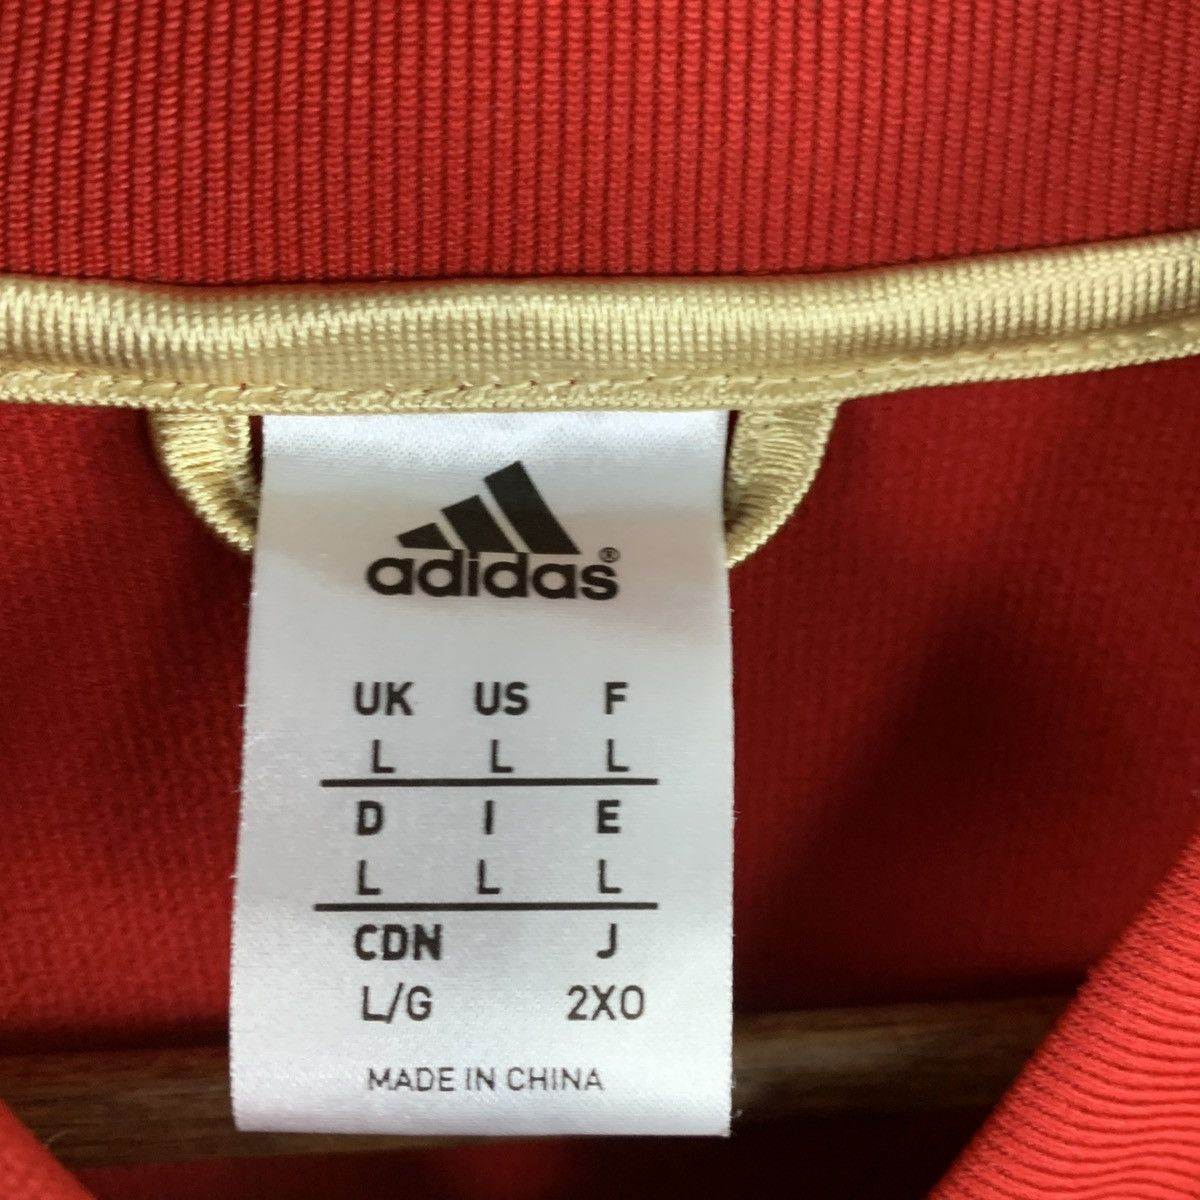 Adidas ADIDAS FC Bayern Munich 2012-13 Anthem Track Jacket Large L Size US L / EU 52-54 / 3 - 8 Thumbnail